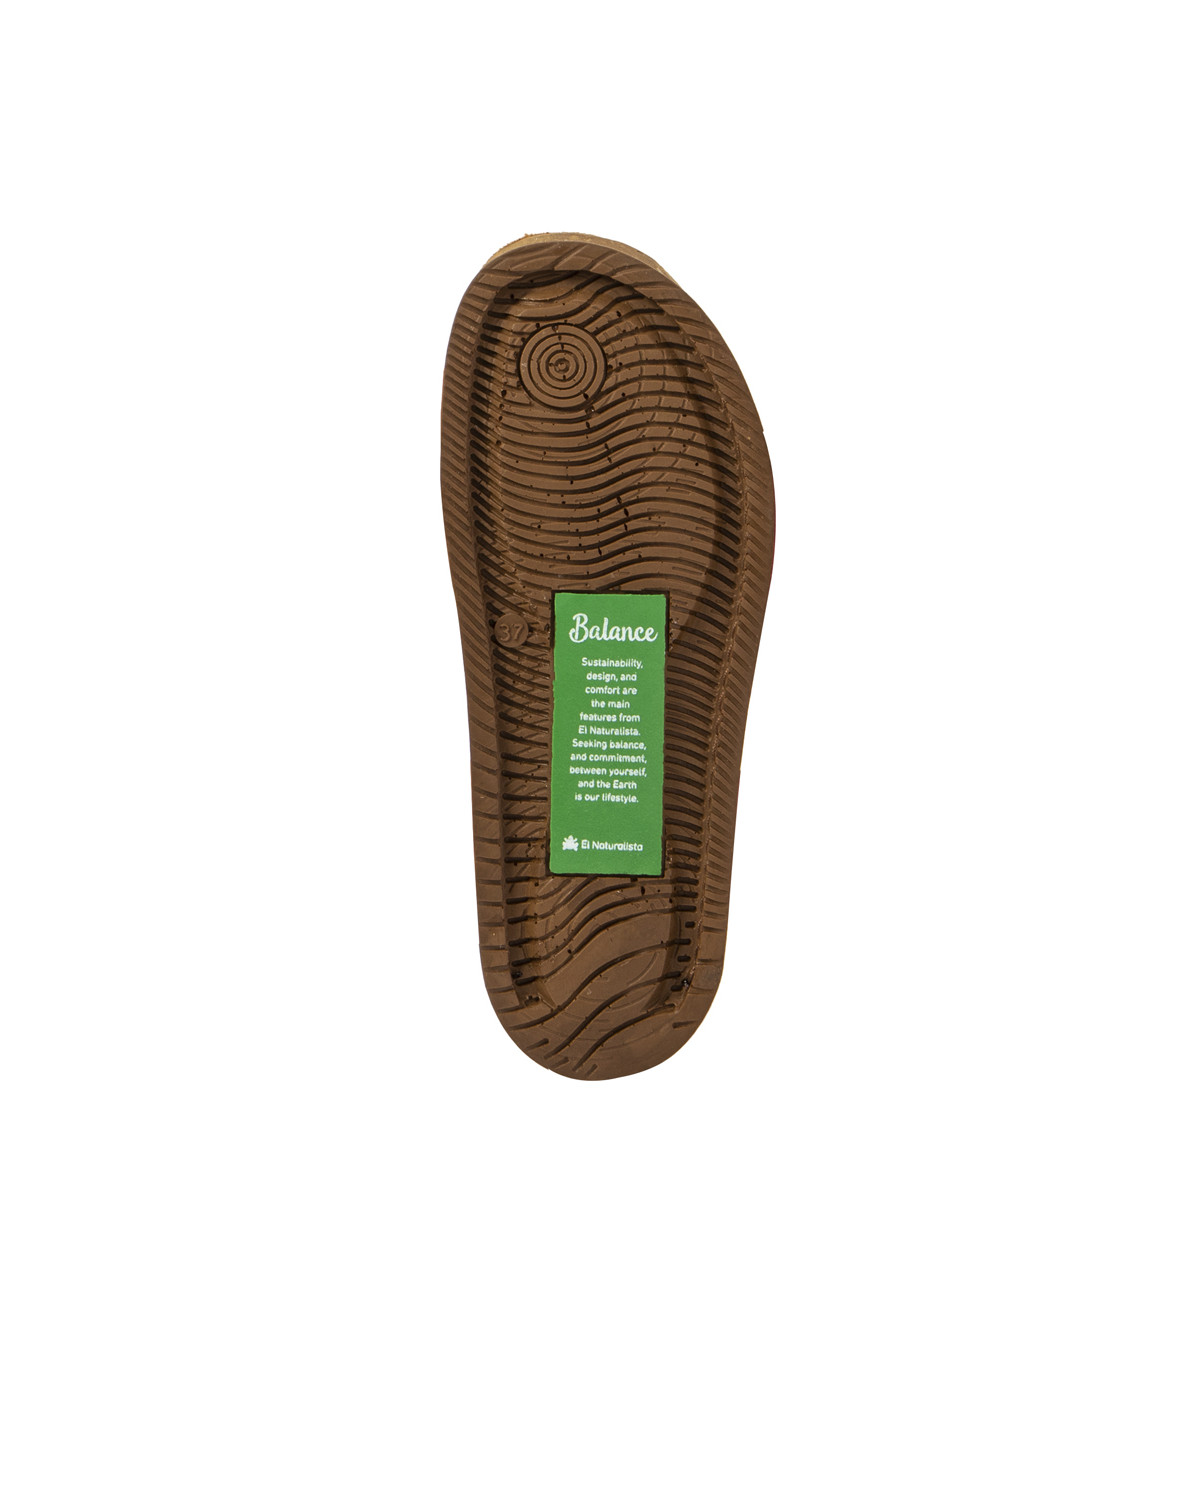 Sandales confortables plates en cuir ultra confort - Rose - El naturalista